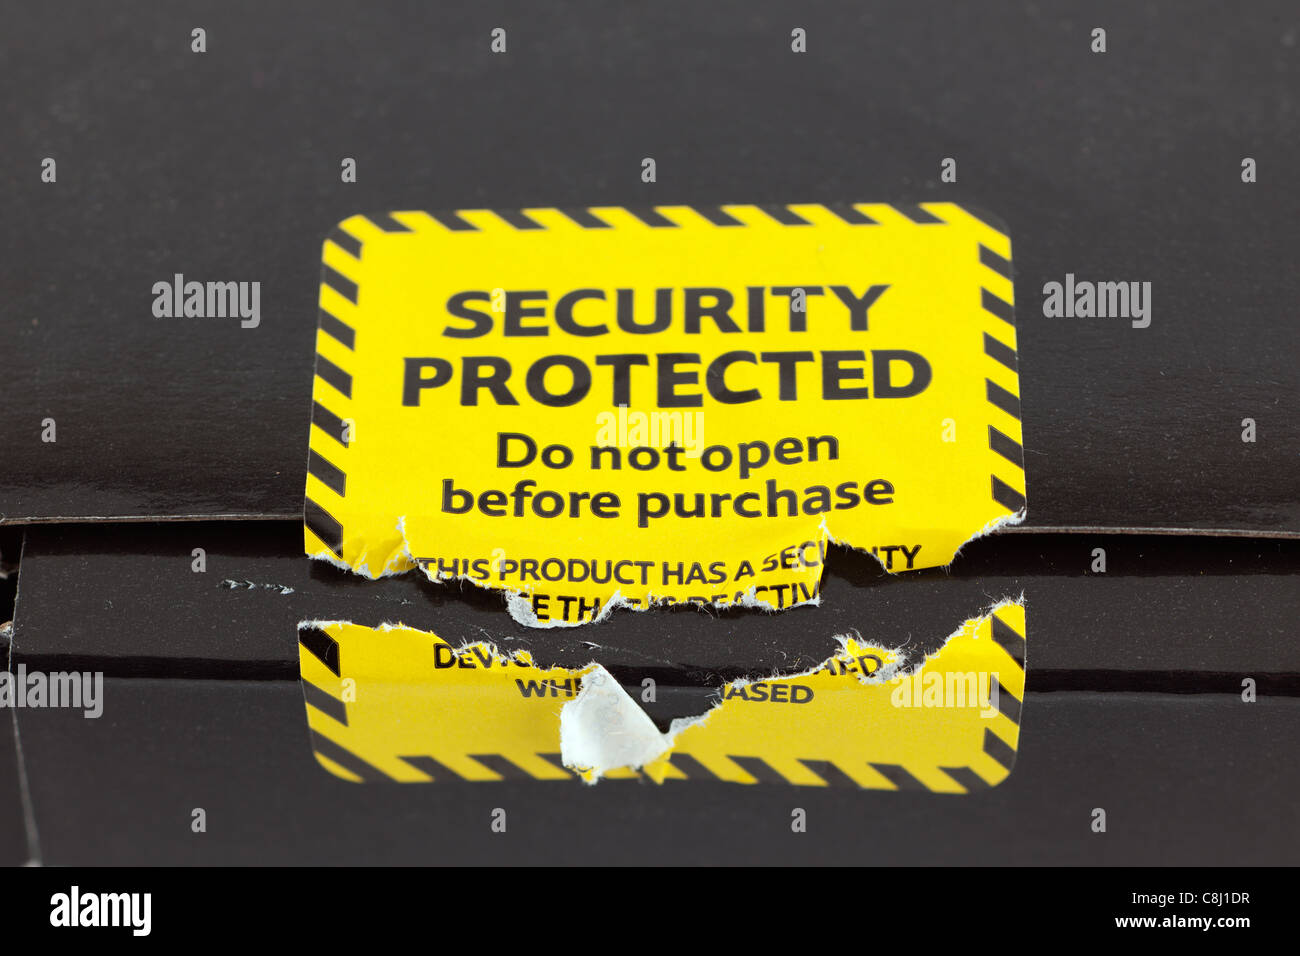 La sécurité de la ti protégé étiquette jaune cassé Banque D'Images